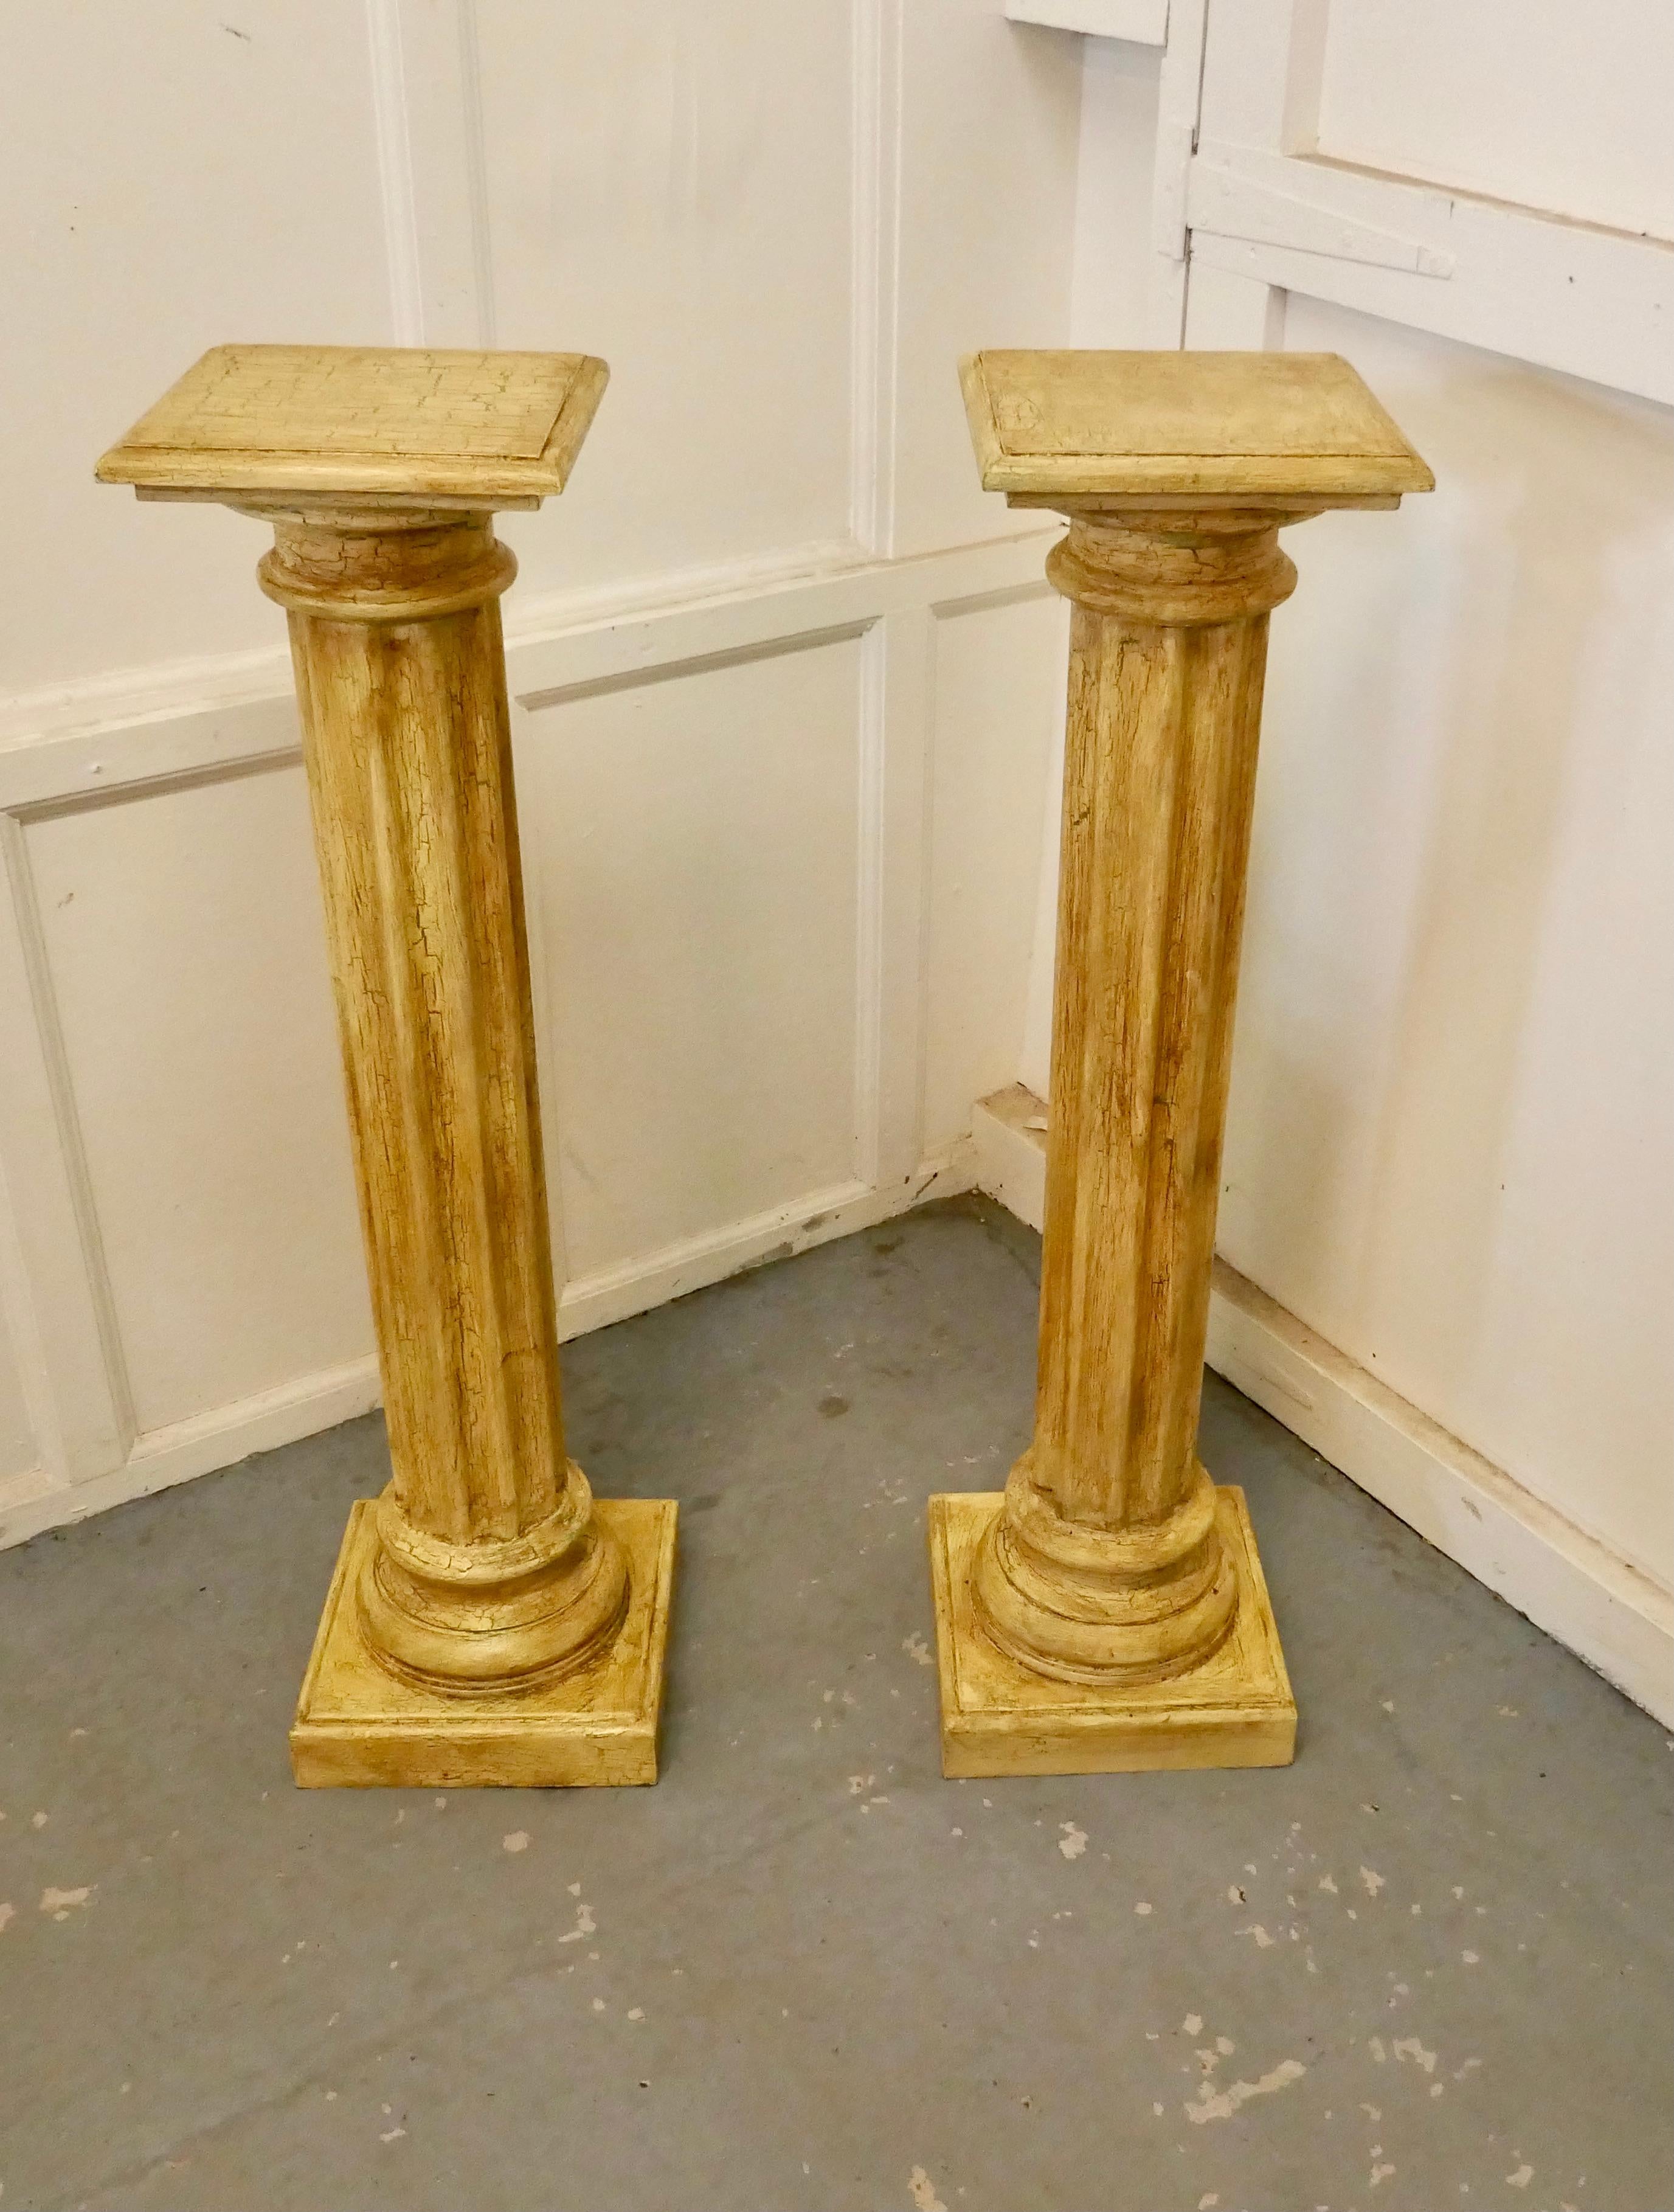 Ein Paar klassischer Säulensockel mit Craquelé-Finish in beschädigter Farbe.

Ein hervorragendes Paar kannelierter klassischer Säulensockel. Die Sockel sind aus Holz gefertigt und mit einer dunklen cremefarbenen Craquelé-Beschichtung versehen